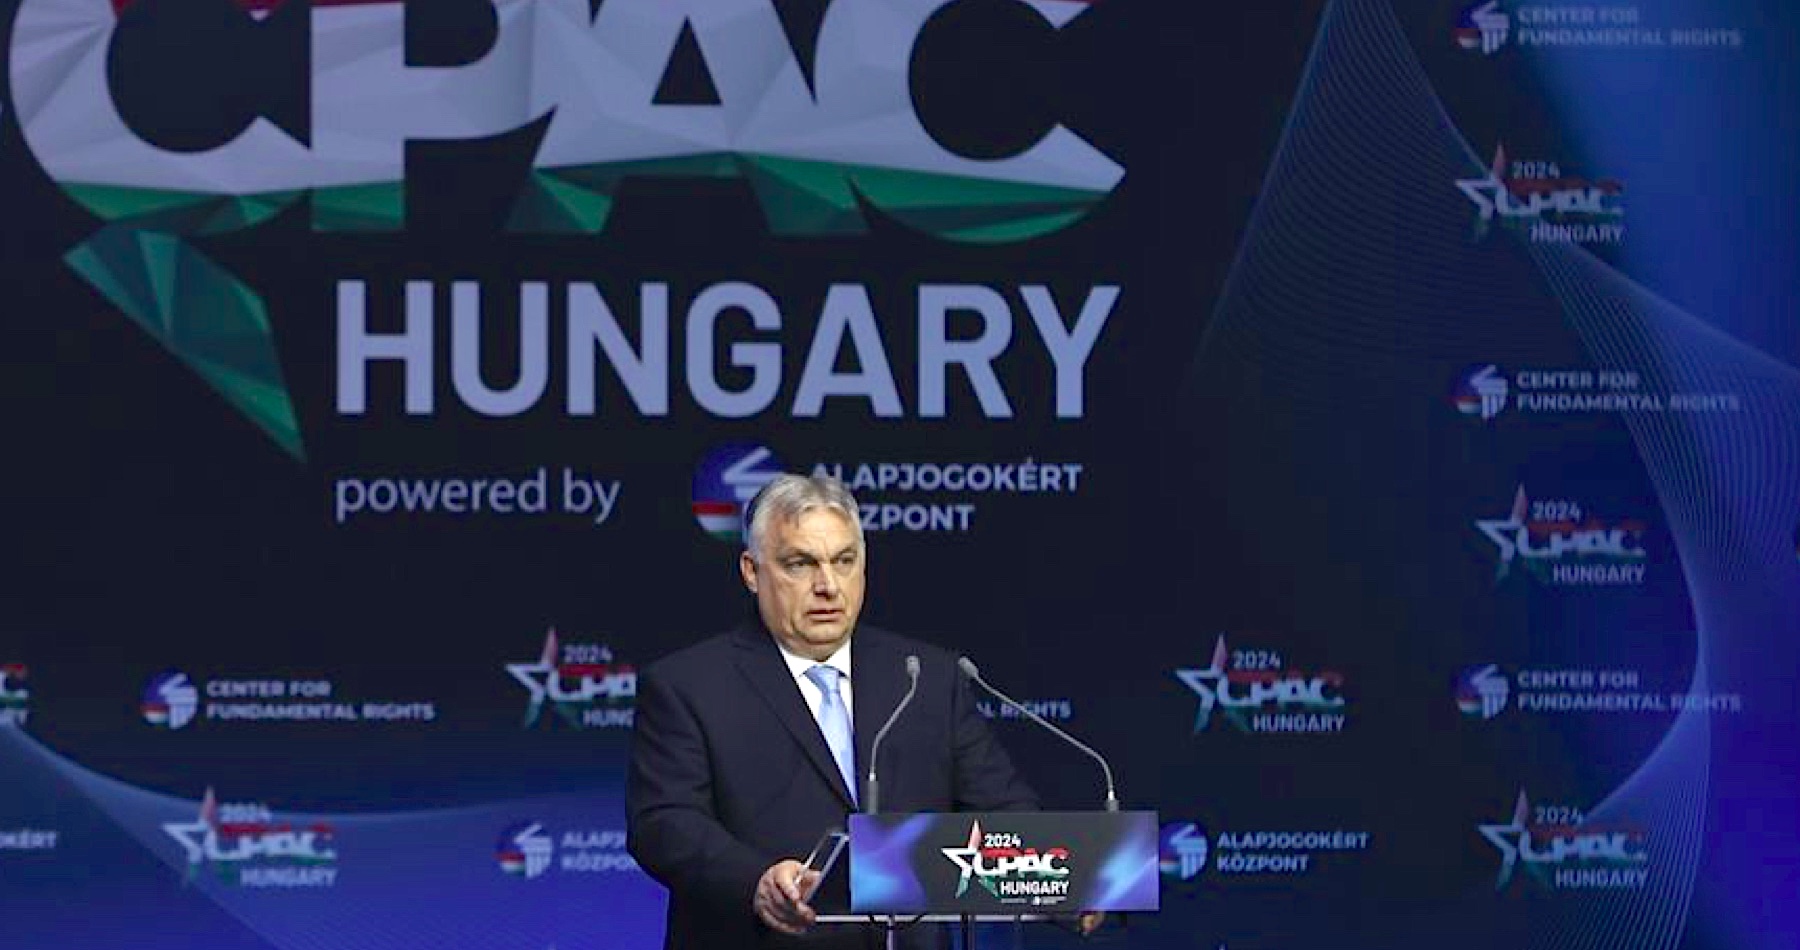 VIDEO: Predstaviteľov liberálnej hegemónie treba vyhnať zo svojich pozícií,“ vyhlásil Orbán na medzinárodnej konferencii CPAC organizovanej v Budapešti